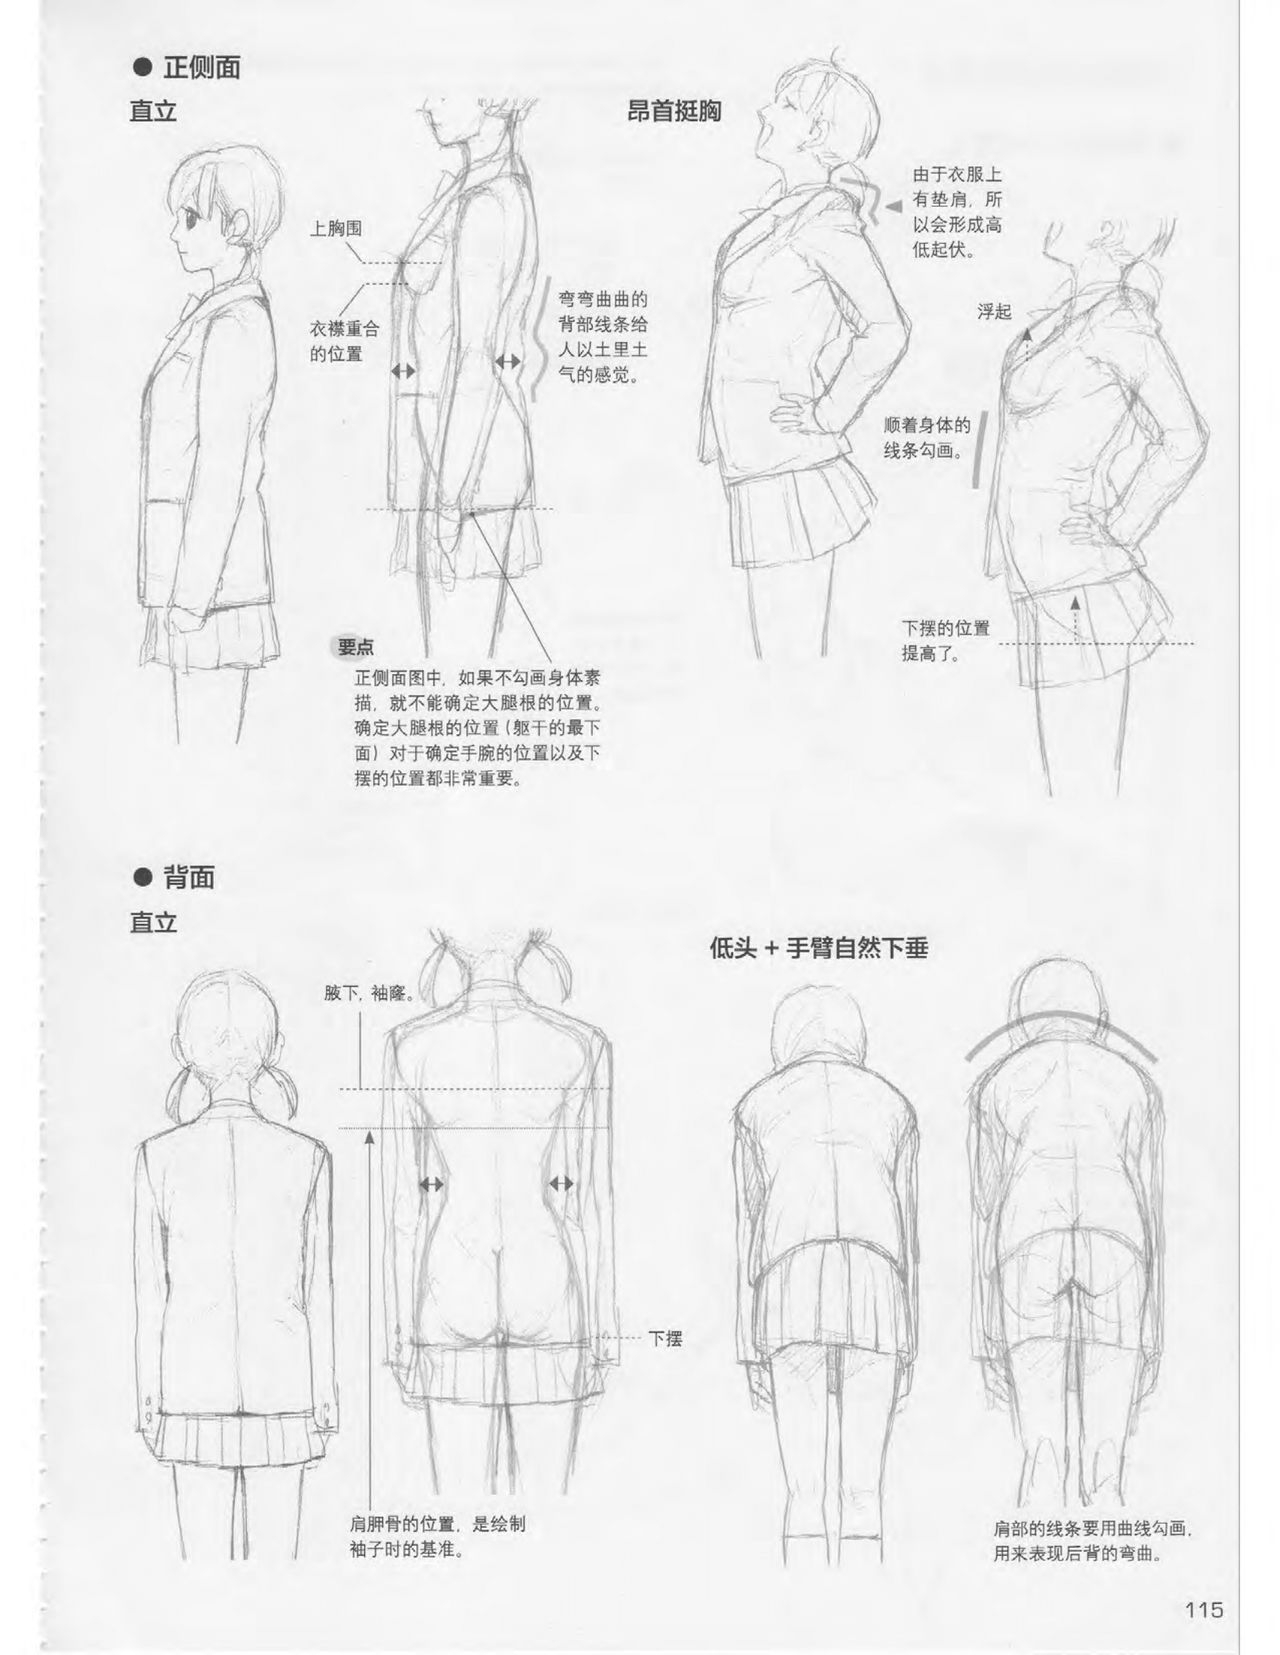 Japanese Manga Master Lecture 3: Lin Akira and Kakumaru Maru Talk About Glamorous Character Modeling 115